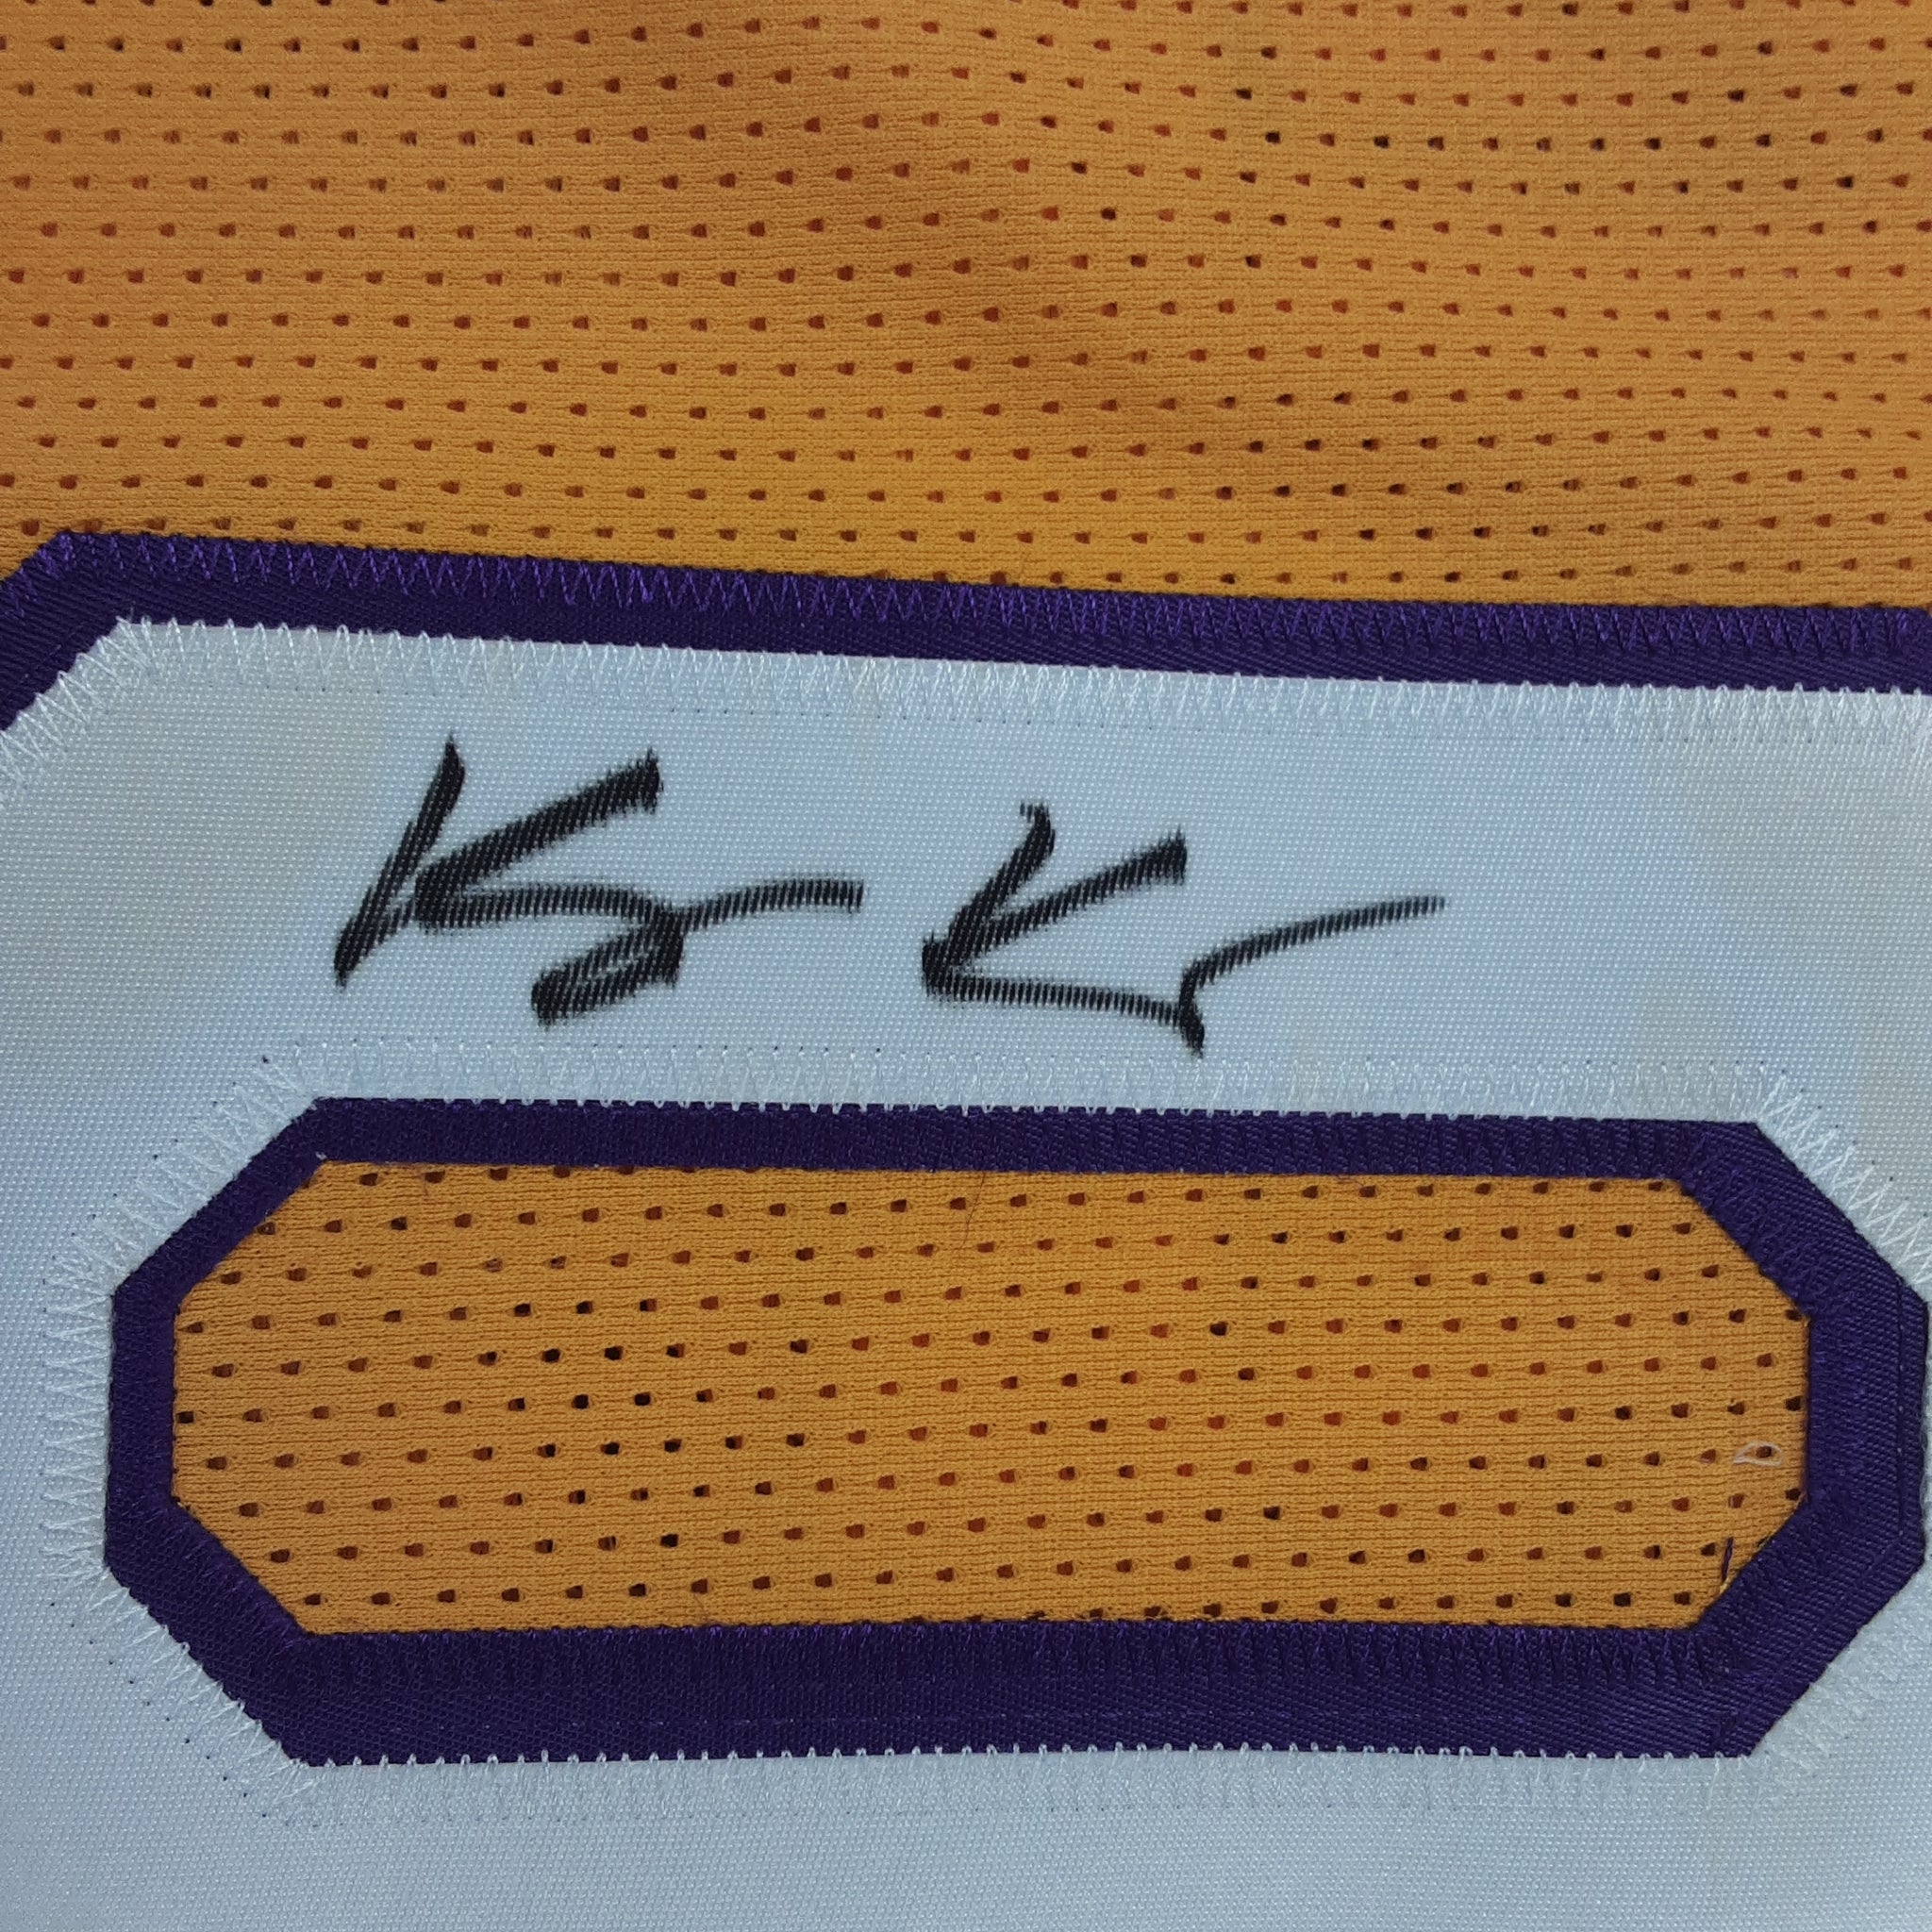  Kyle Kuzma Autographed/Signed Pro Style Black XL